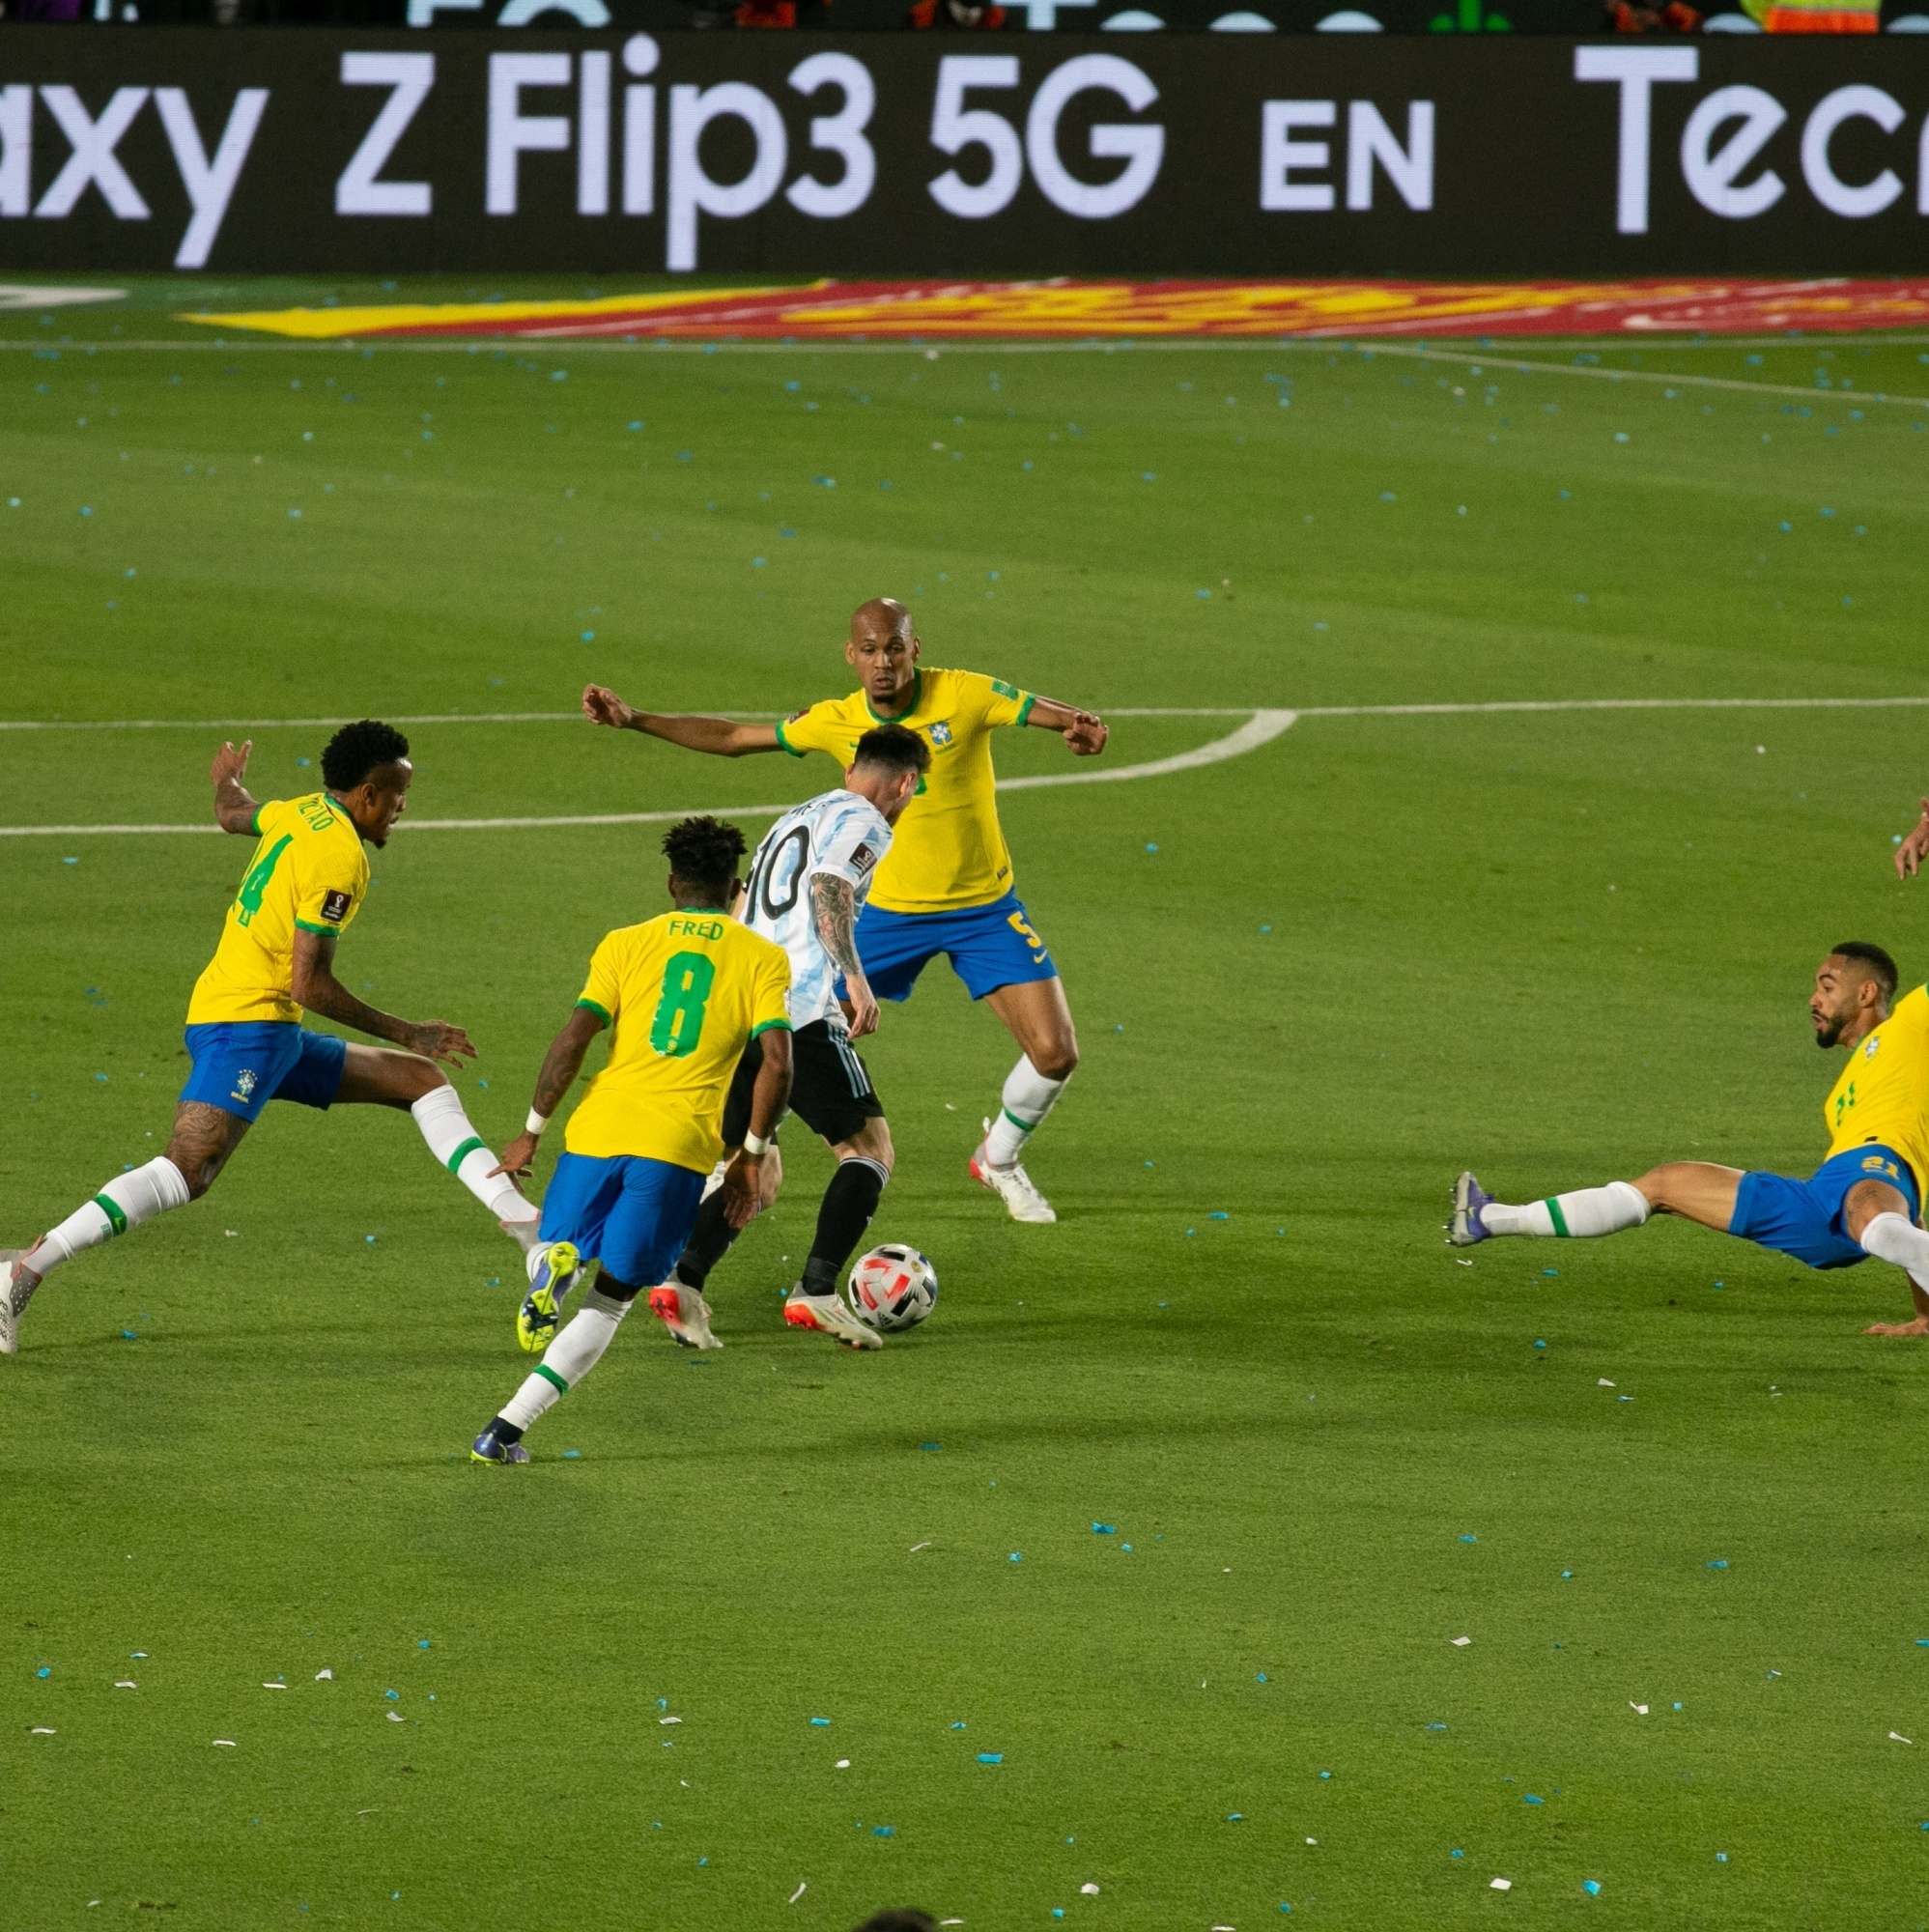 Brasil sub-17 joga para encerrar jejum de oito anos sem títulos da